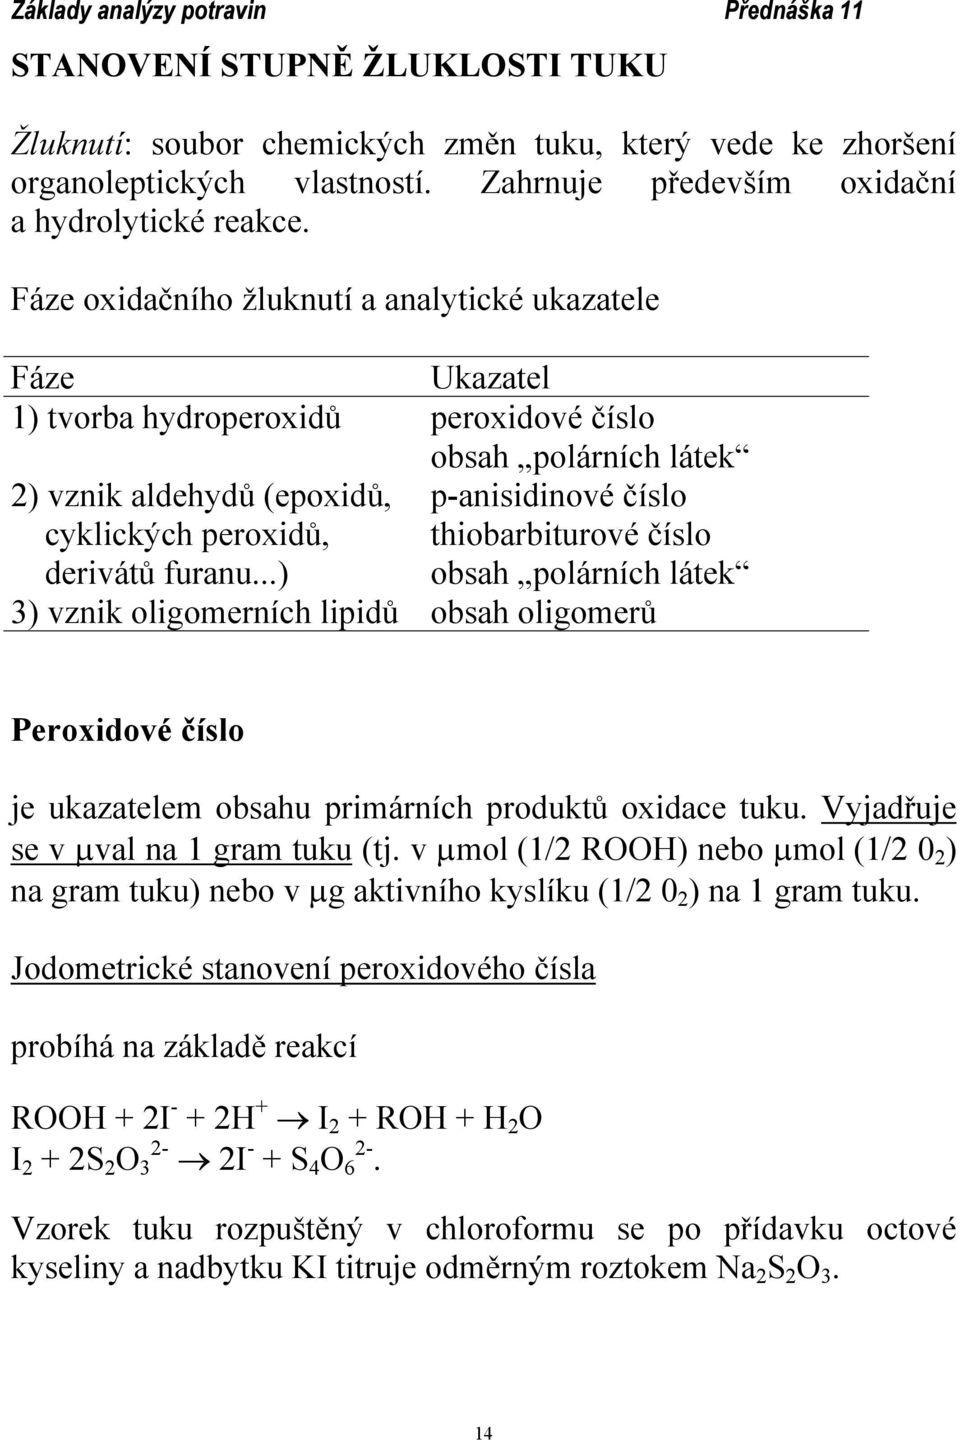 thiobarbiturové číslo derivátů furanu...) obsah polárních látek 3) vznik oligomerních lipidů obsah oligomerů Peroxidové číslo je ukazatelem obsahu primárních produktů oxidace tuku.